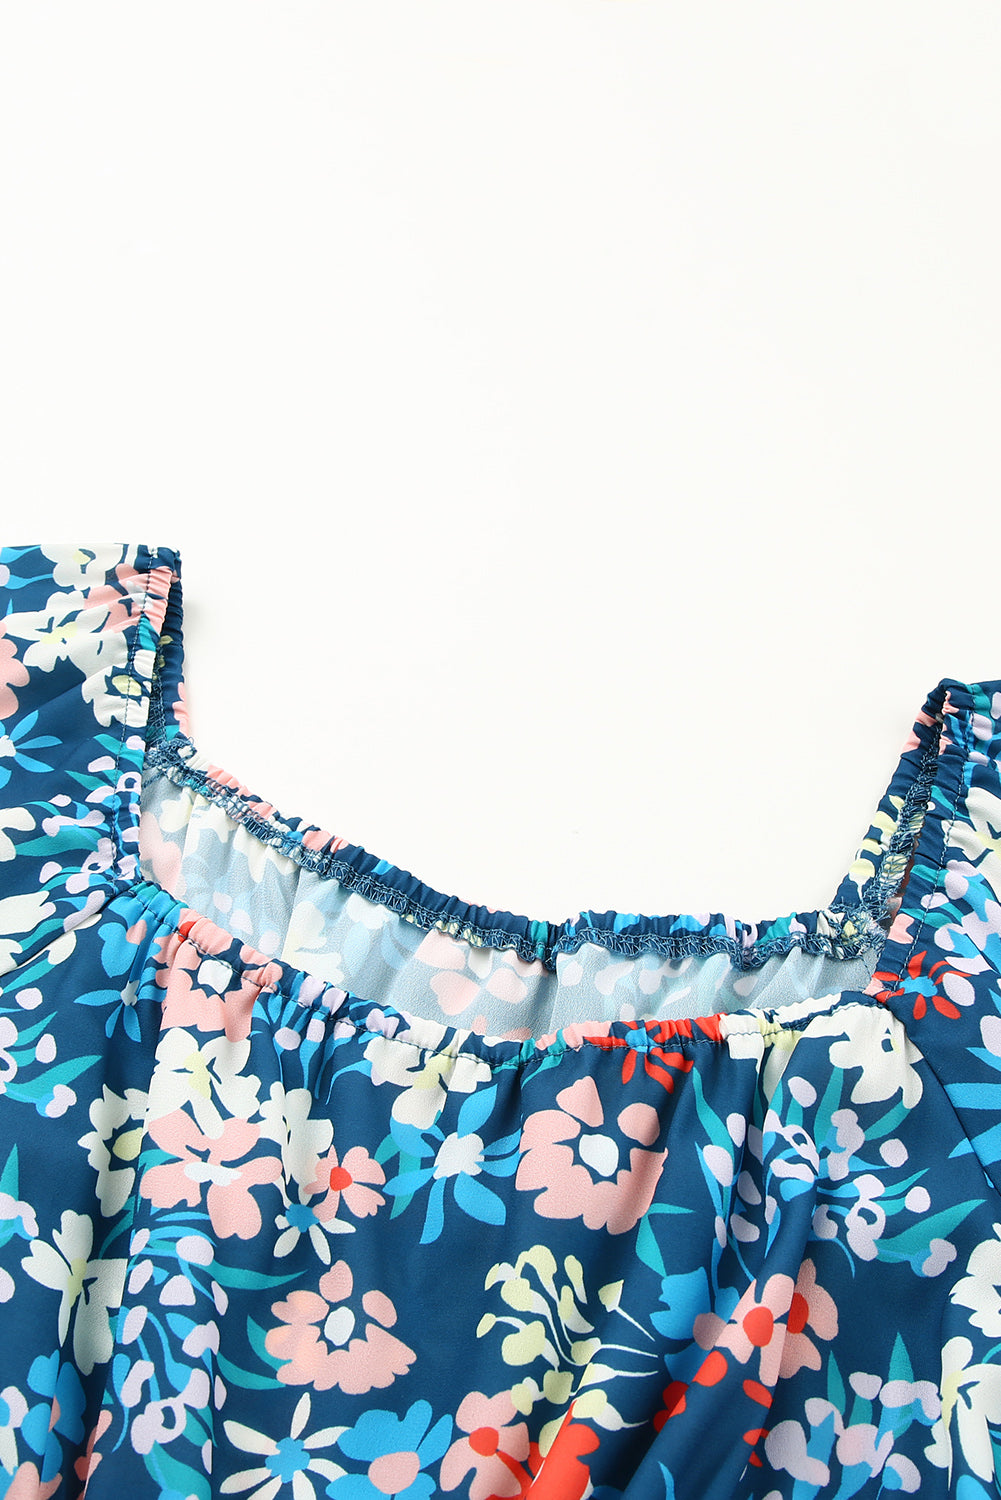 Blaues Kleid mit Rüschen und Blumenmuster und eckigem Ausschnitt